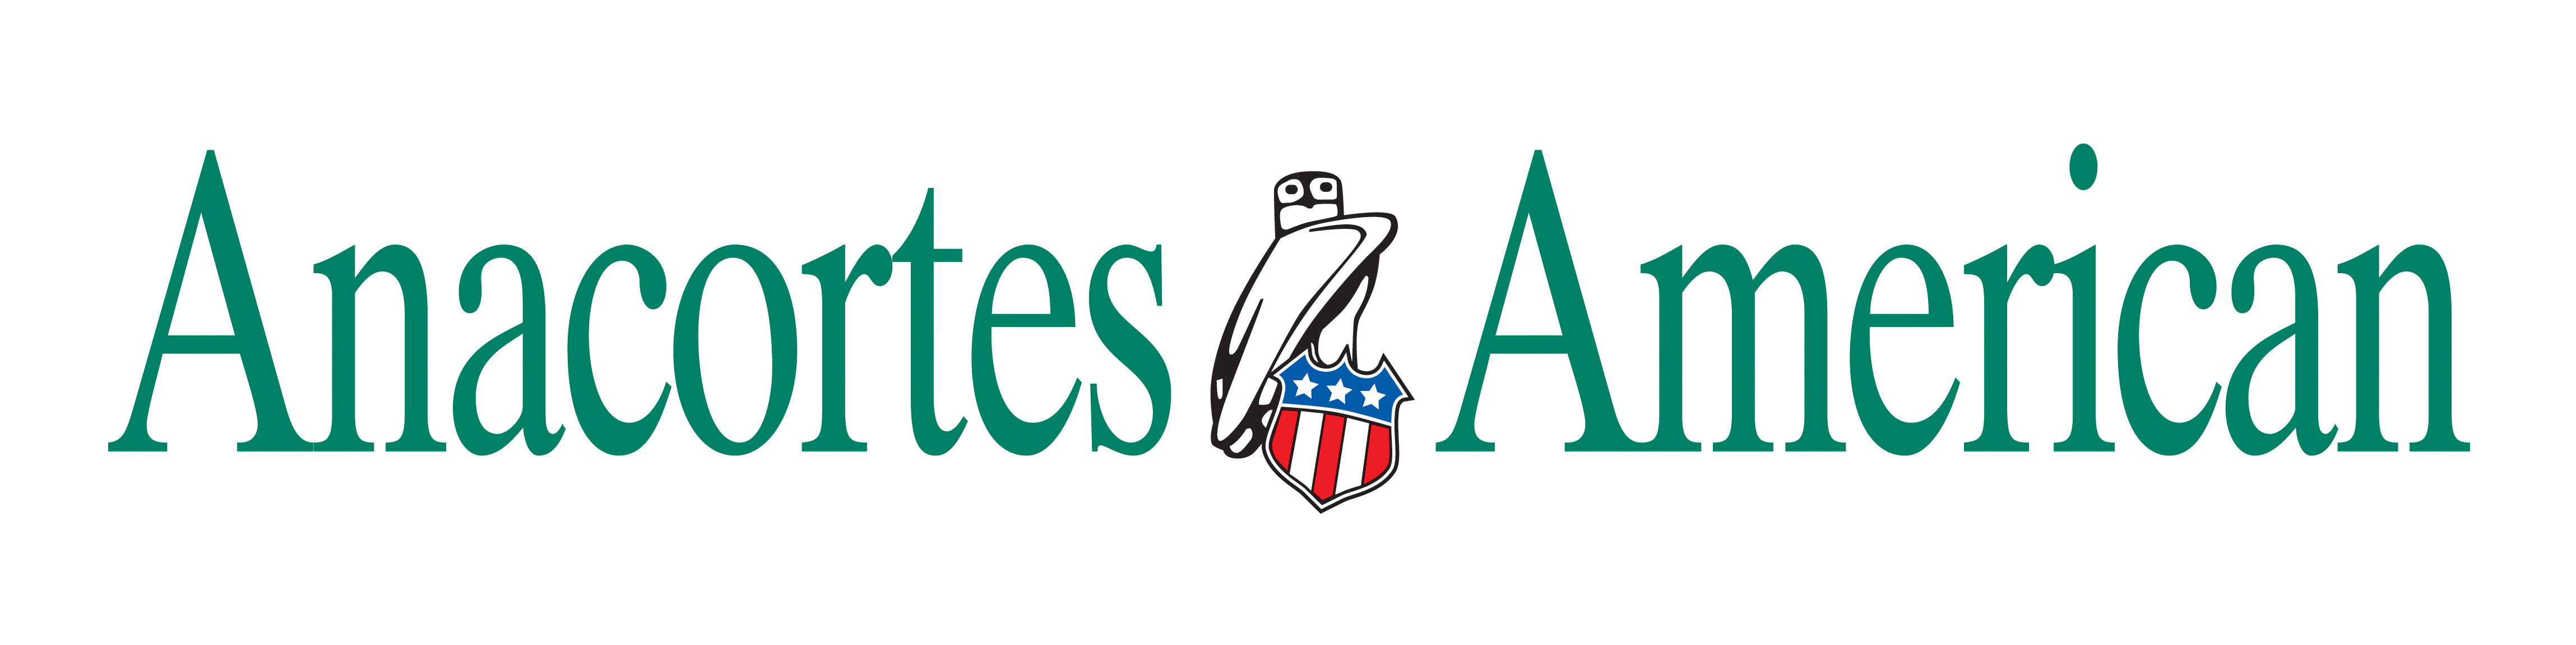 Anacortes American logo